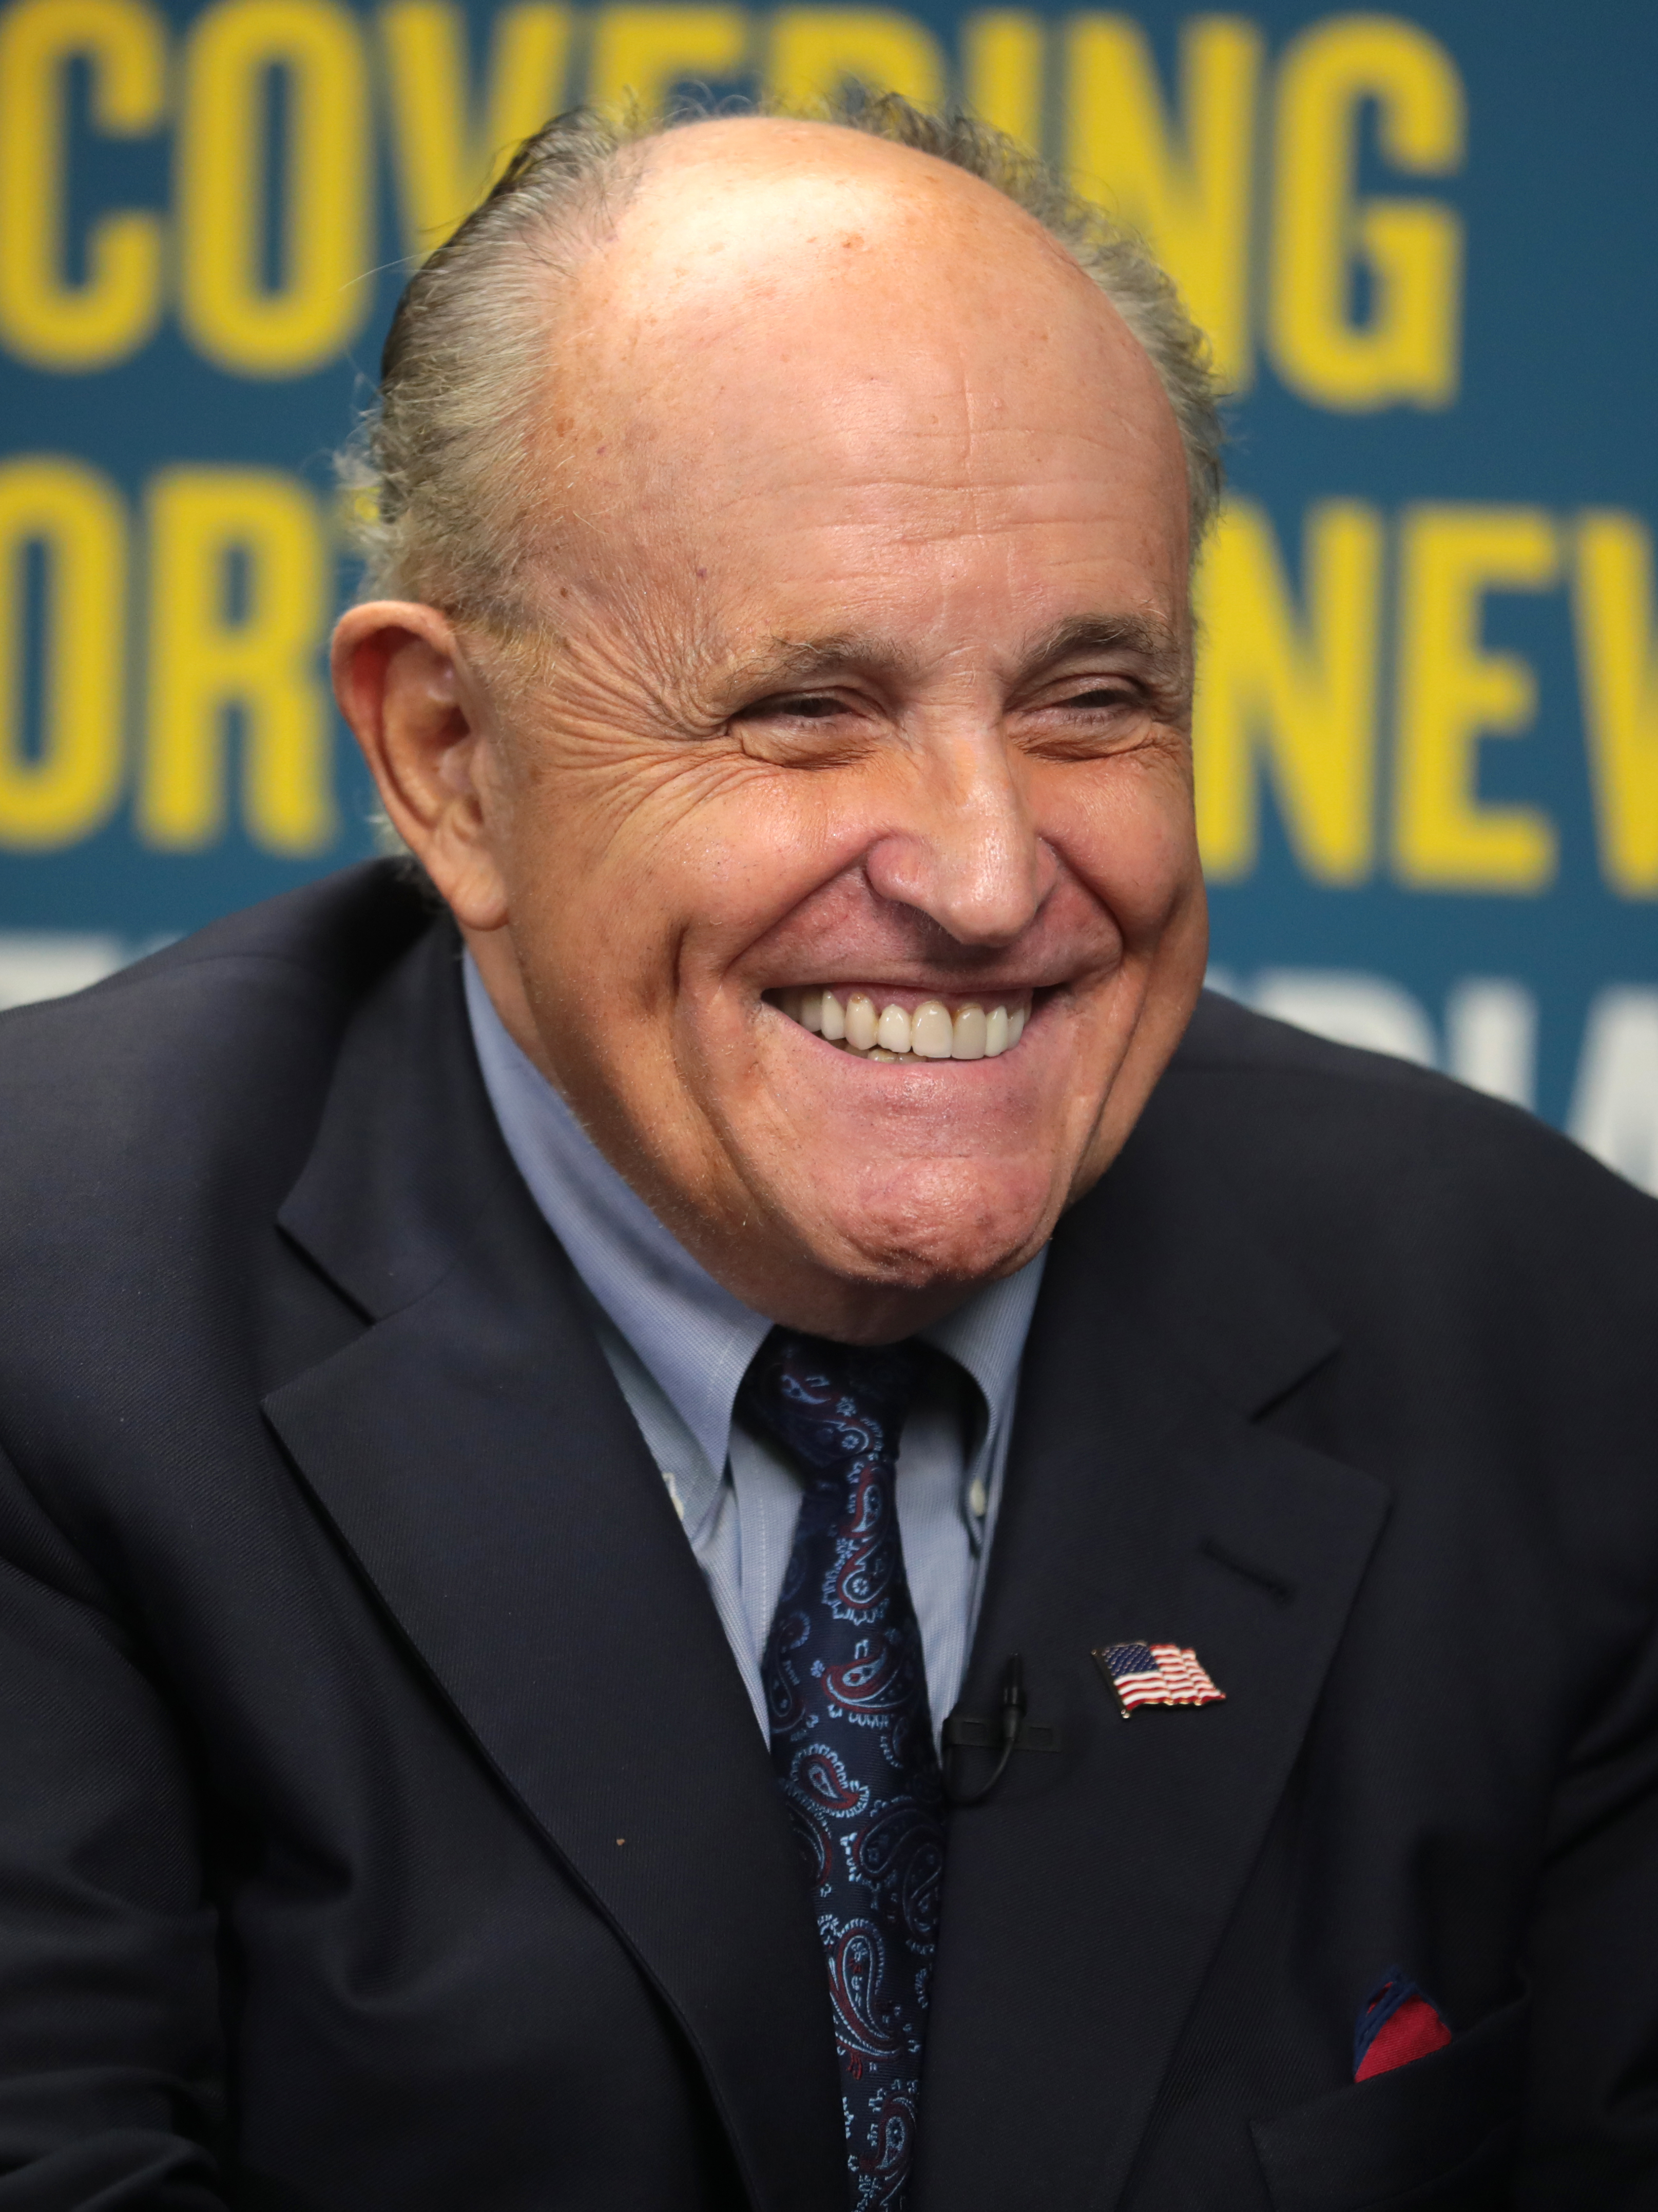 Rudy Giuliani Wikipedia